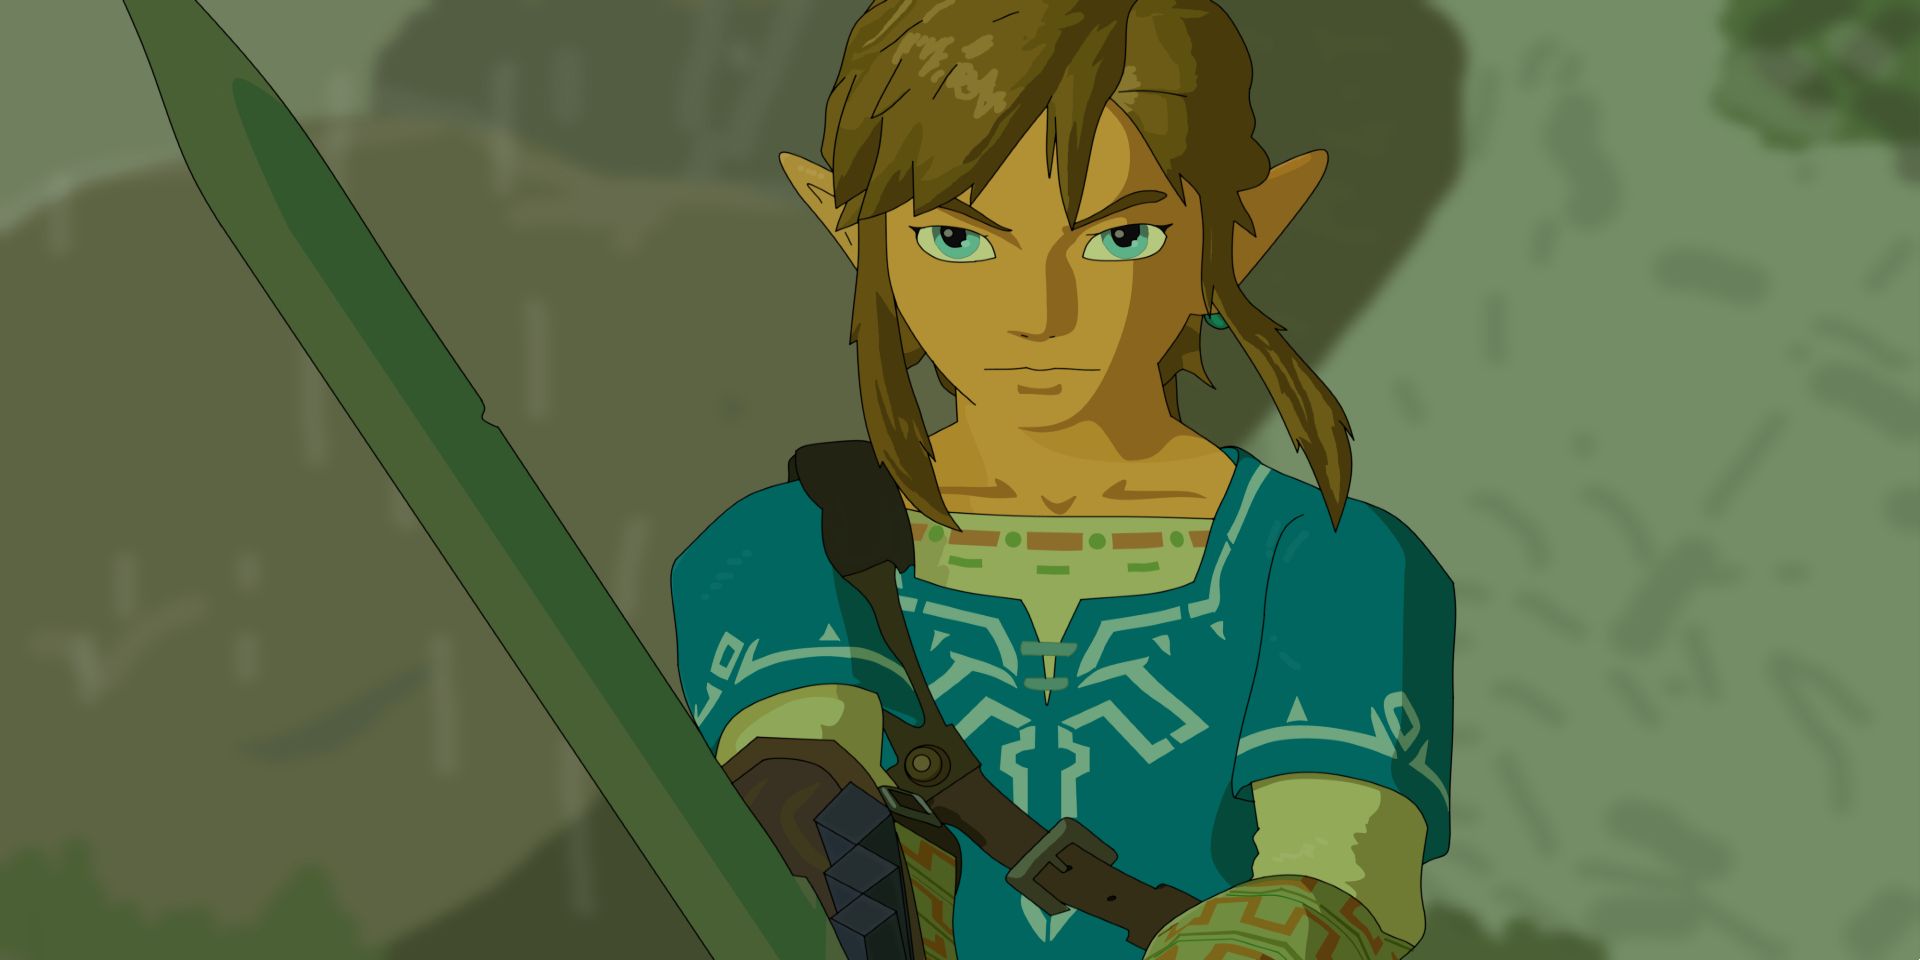 Link raising his sword in The Legend of Zelda Breath of the Wild.